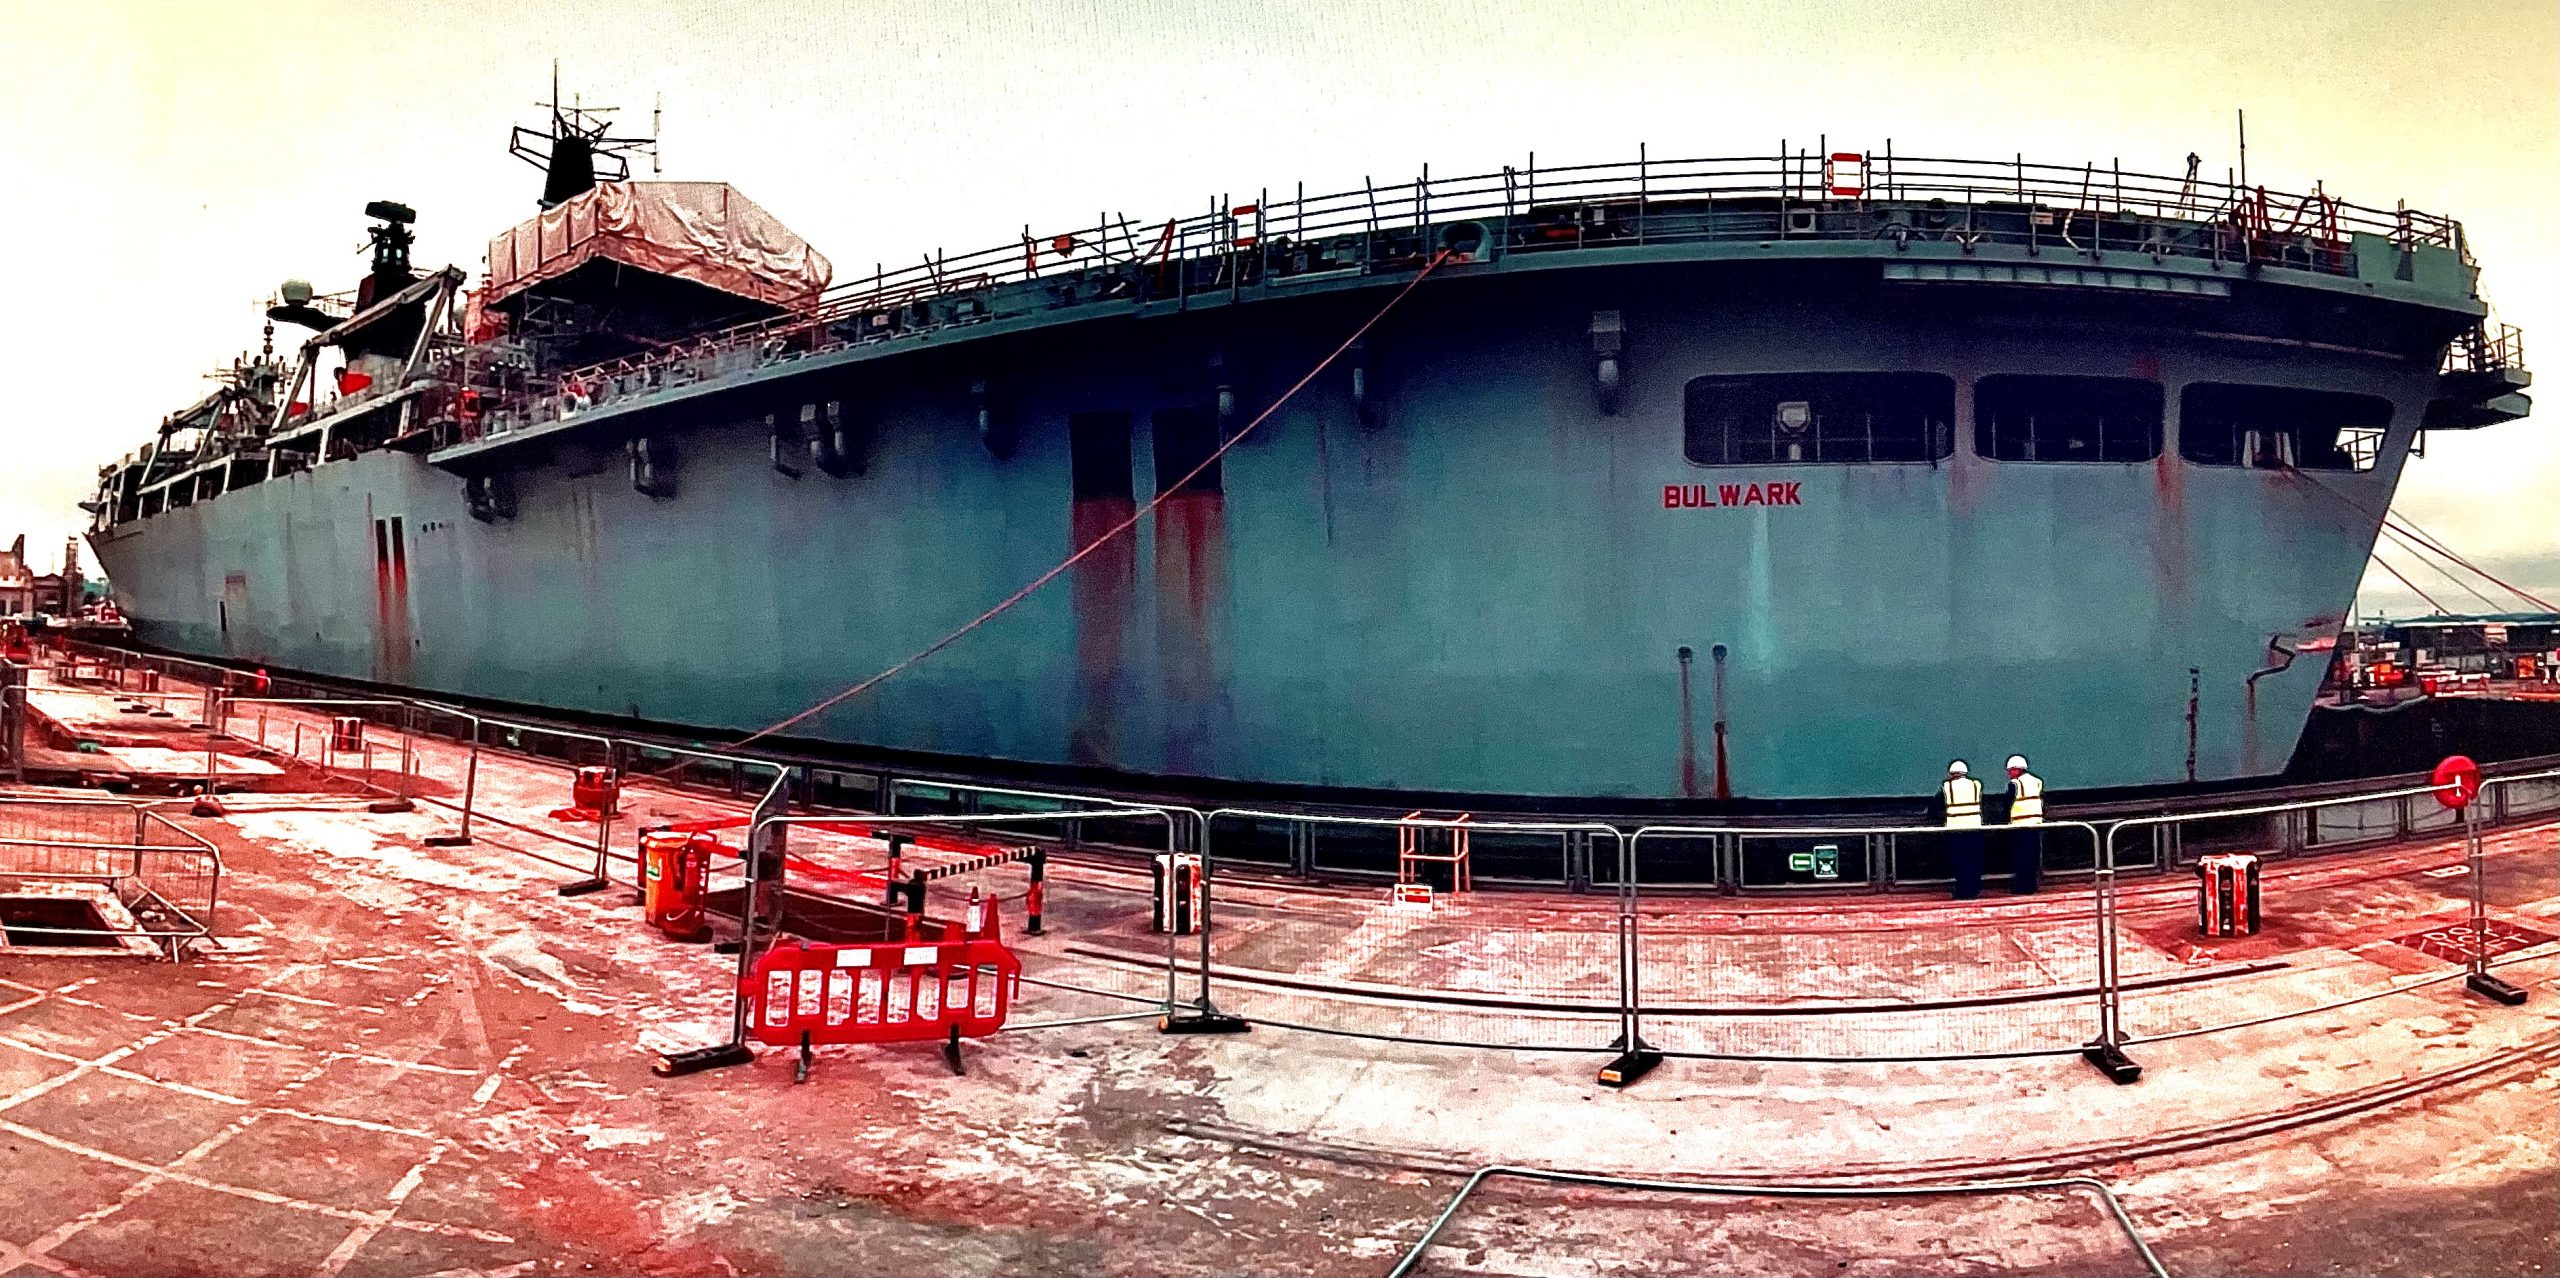 HMS bulwark ship docking